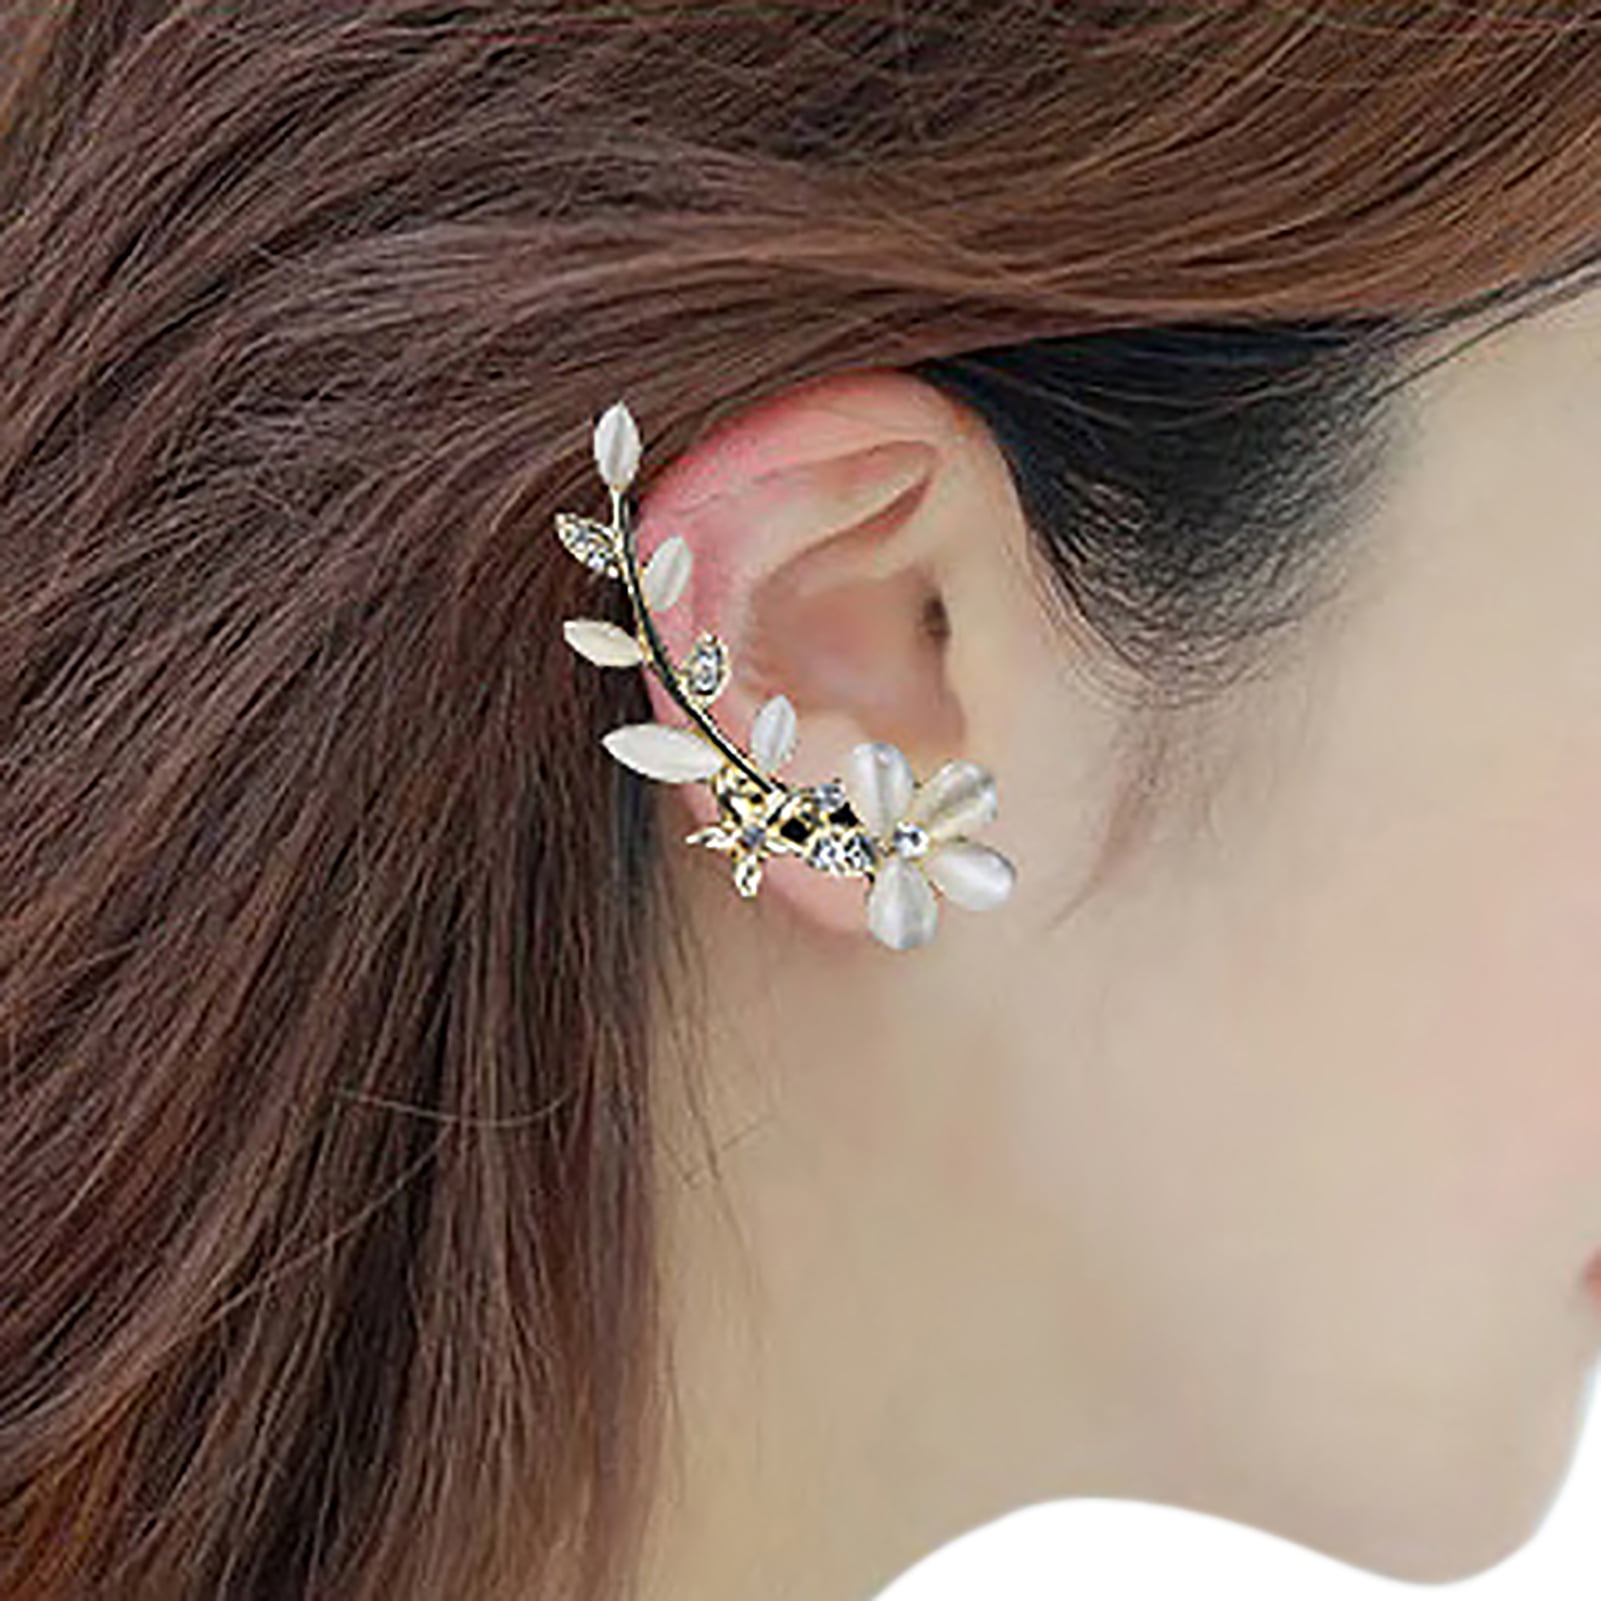 Women Without Piercing Fashion Earrings Rhinestone Earrings No Pierced Ear Clips Romantic Earrings Jewelry